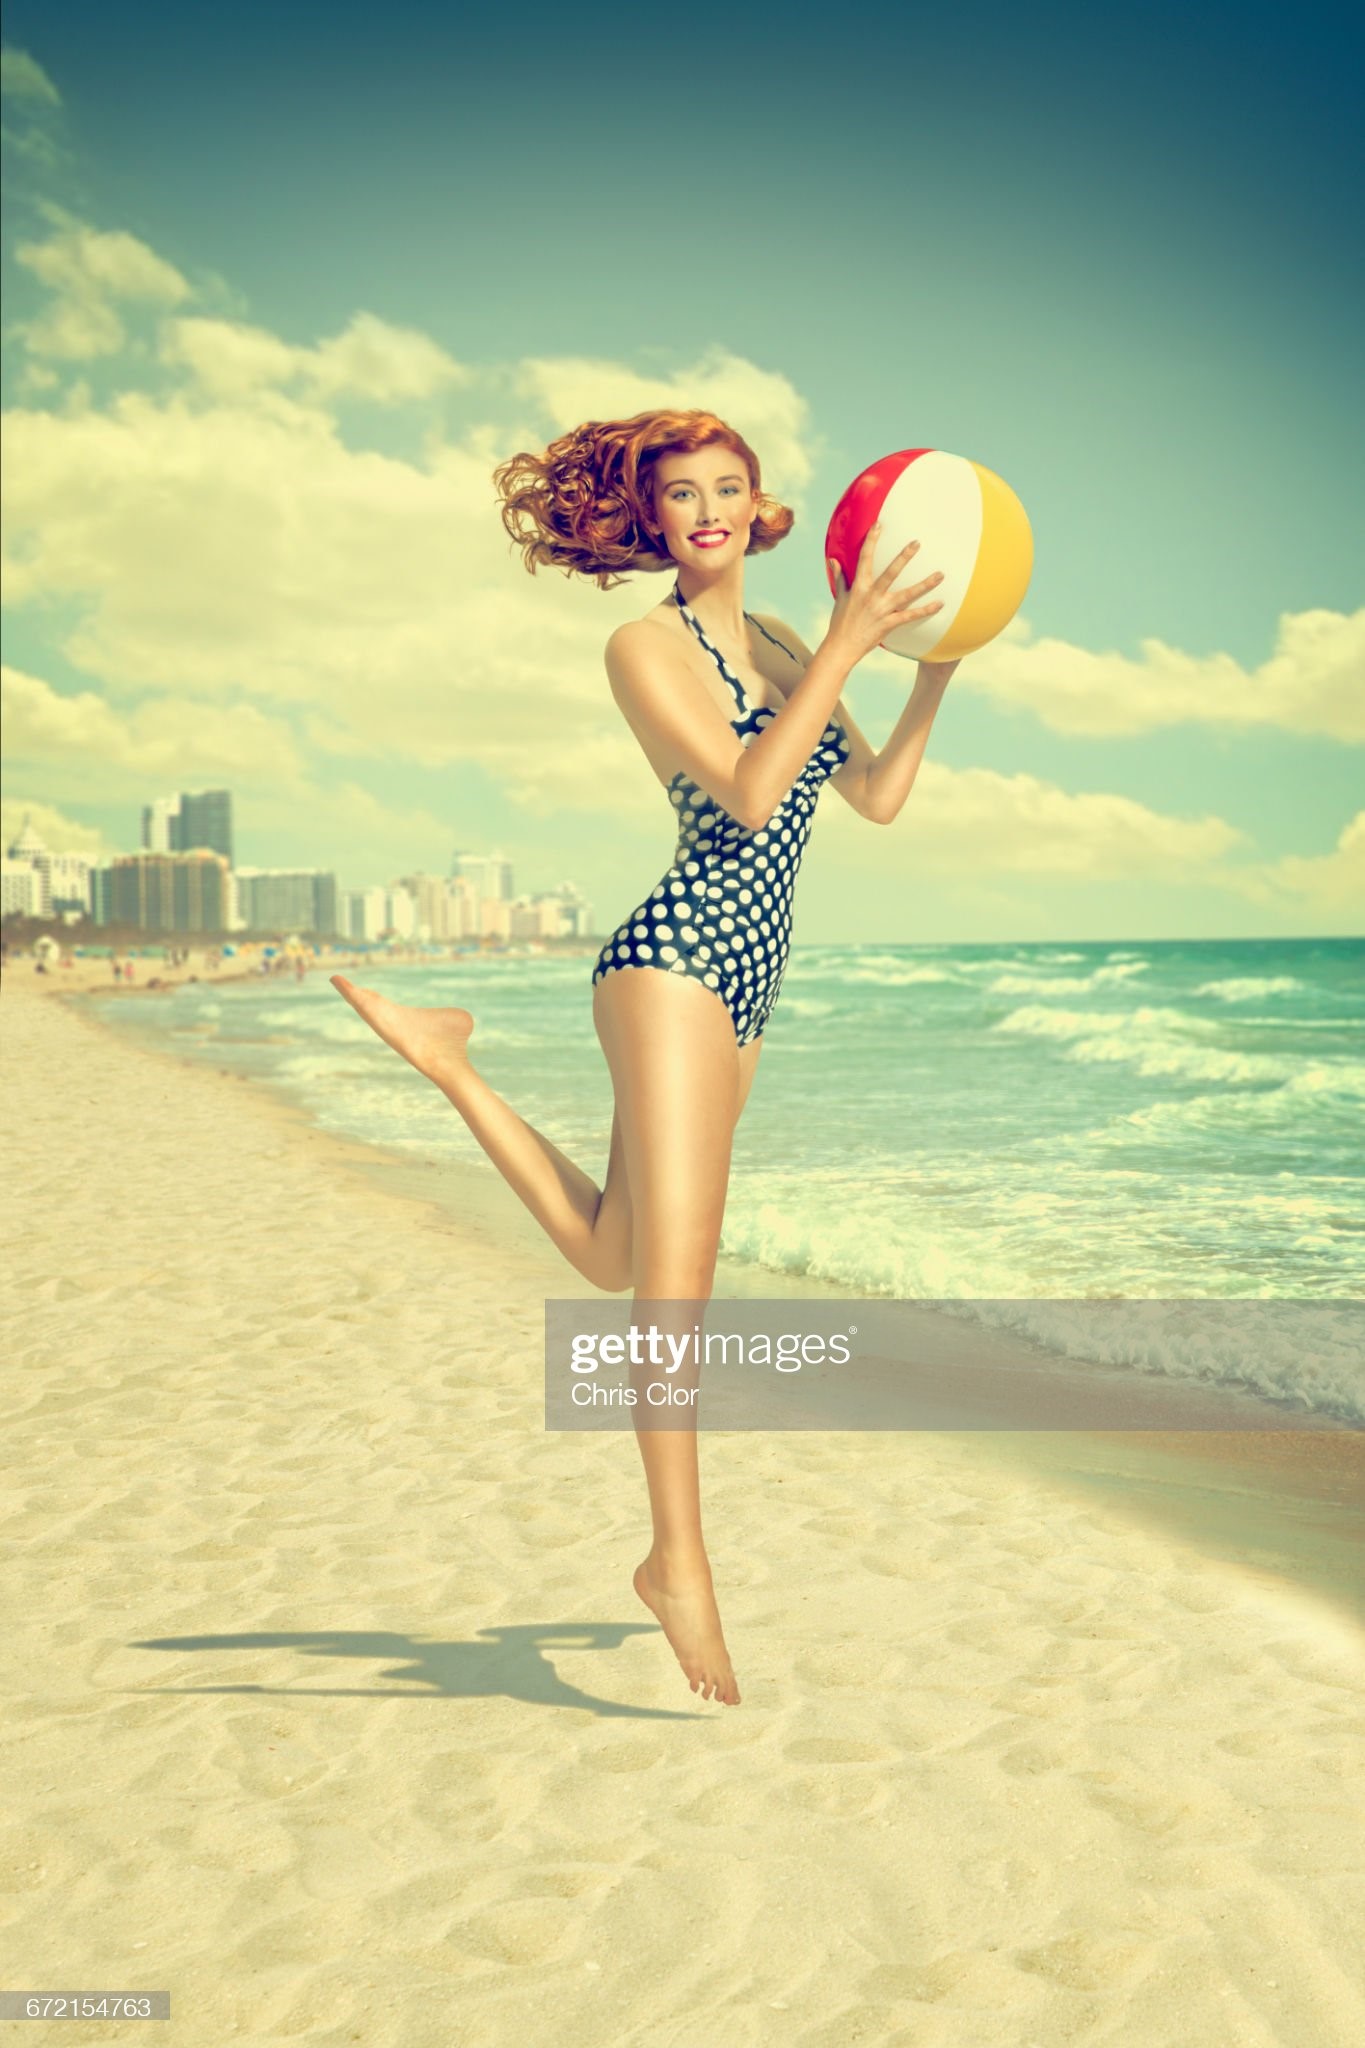 Caucasian woman running on beach carrying beach ball. 